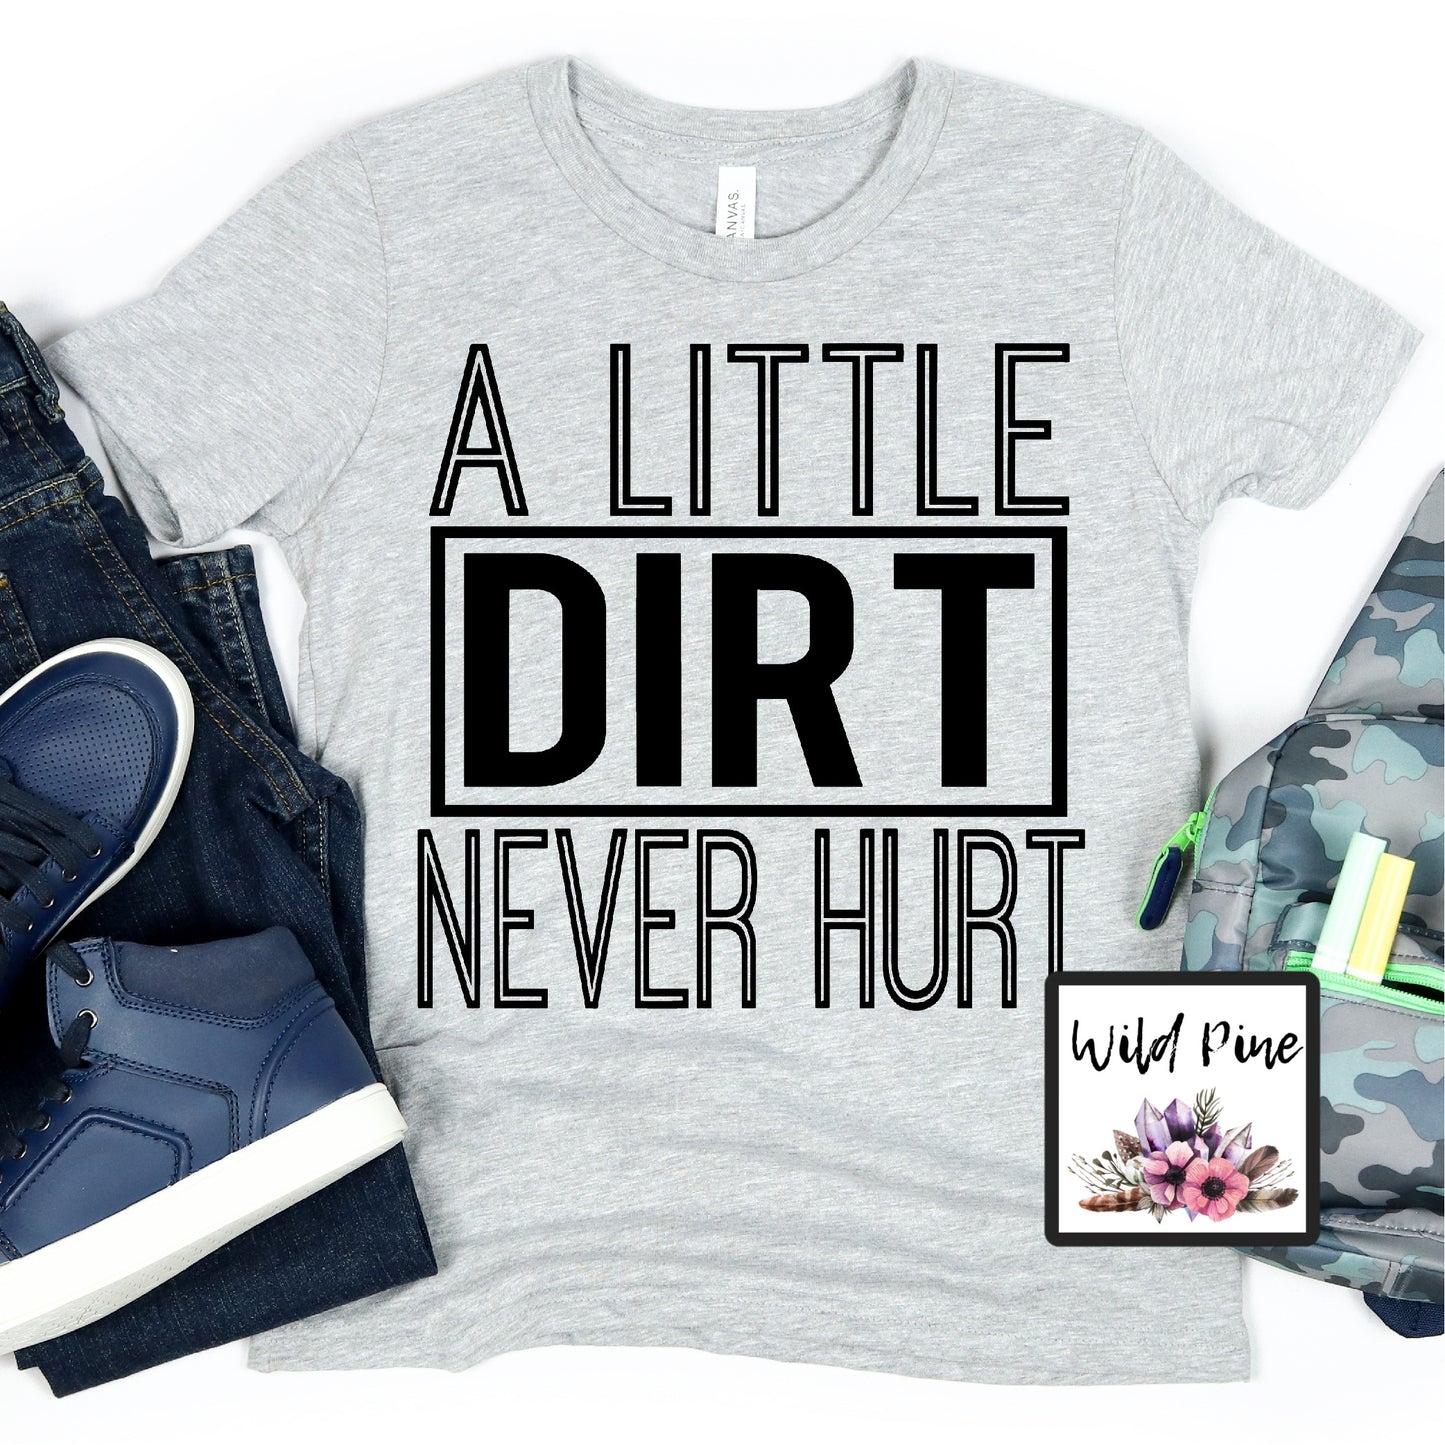 A Little dirt never hurt-YOUTH